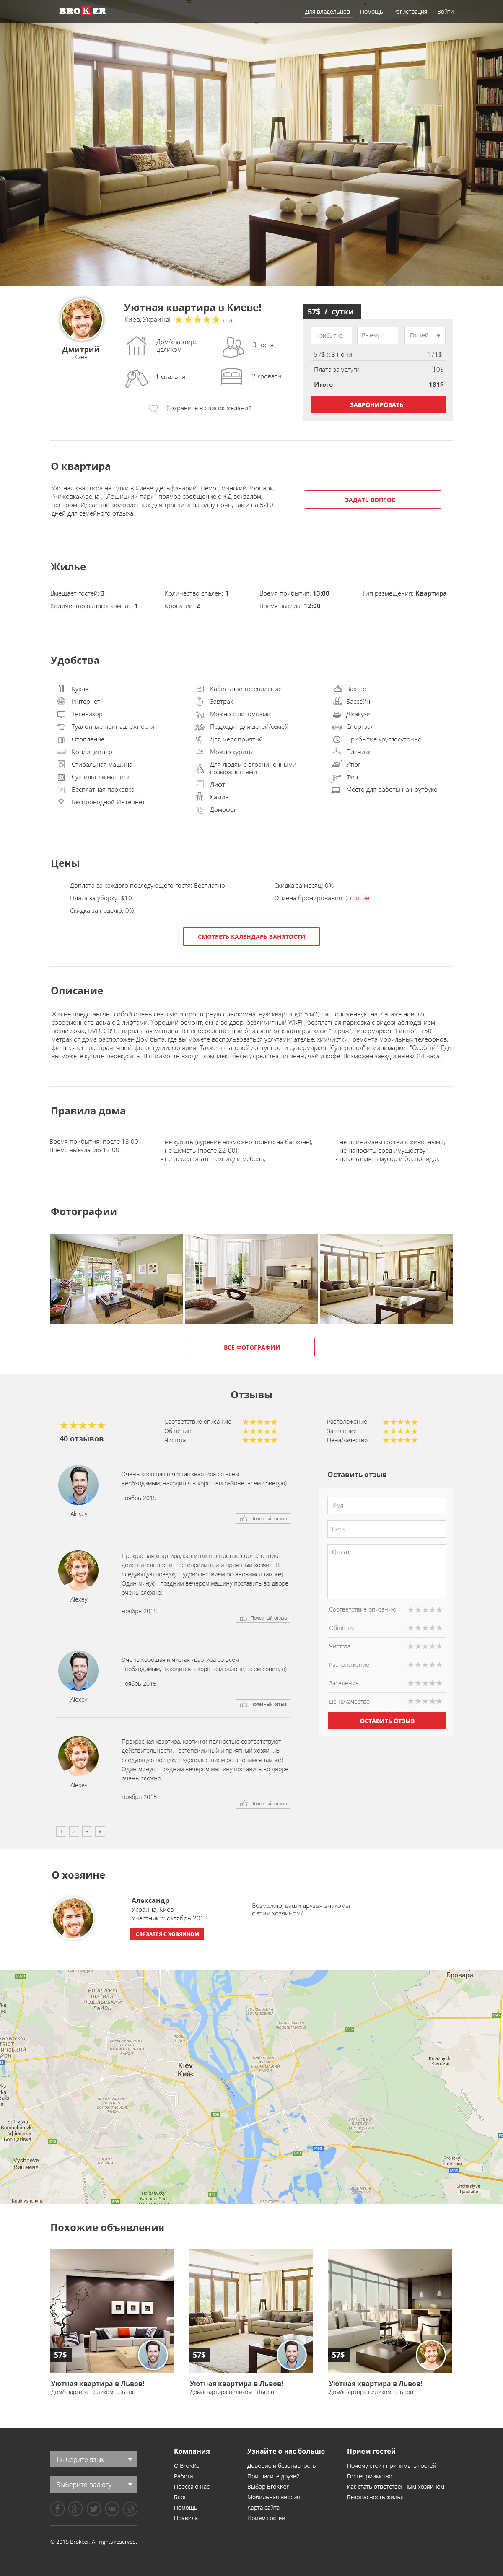 Apartment page design of Brokker website